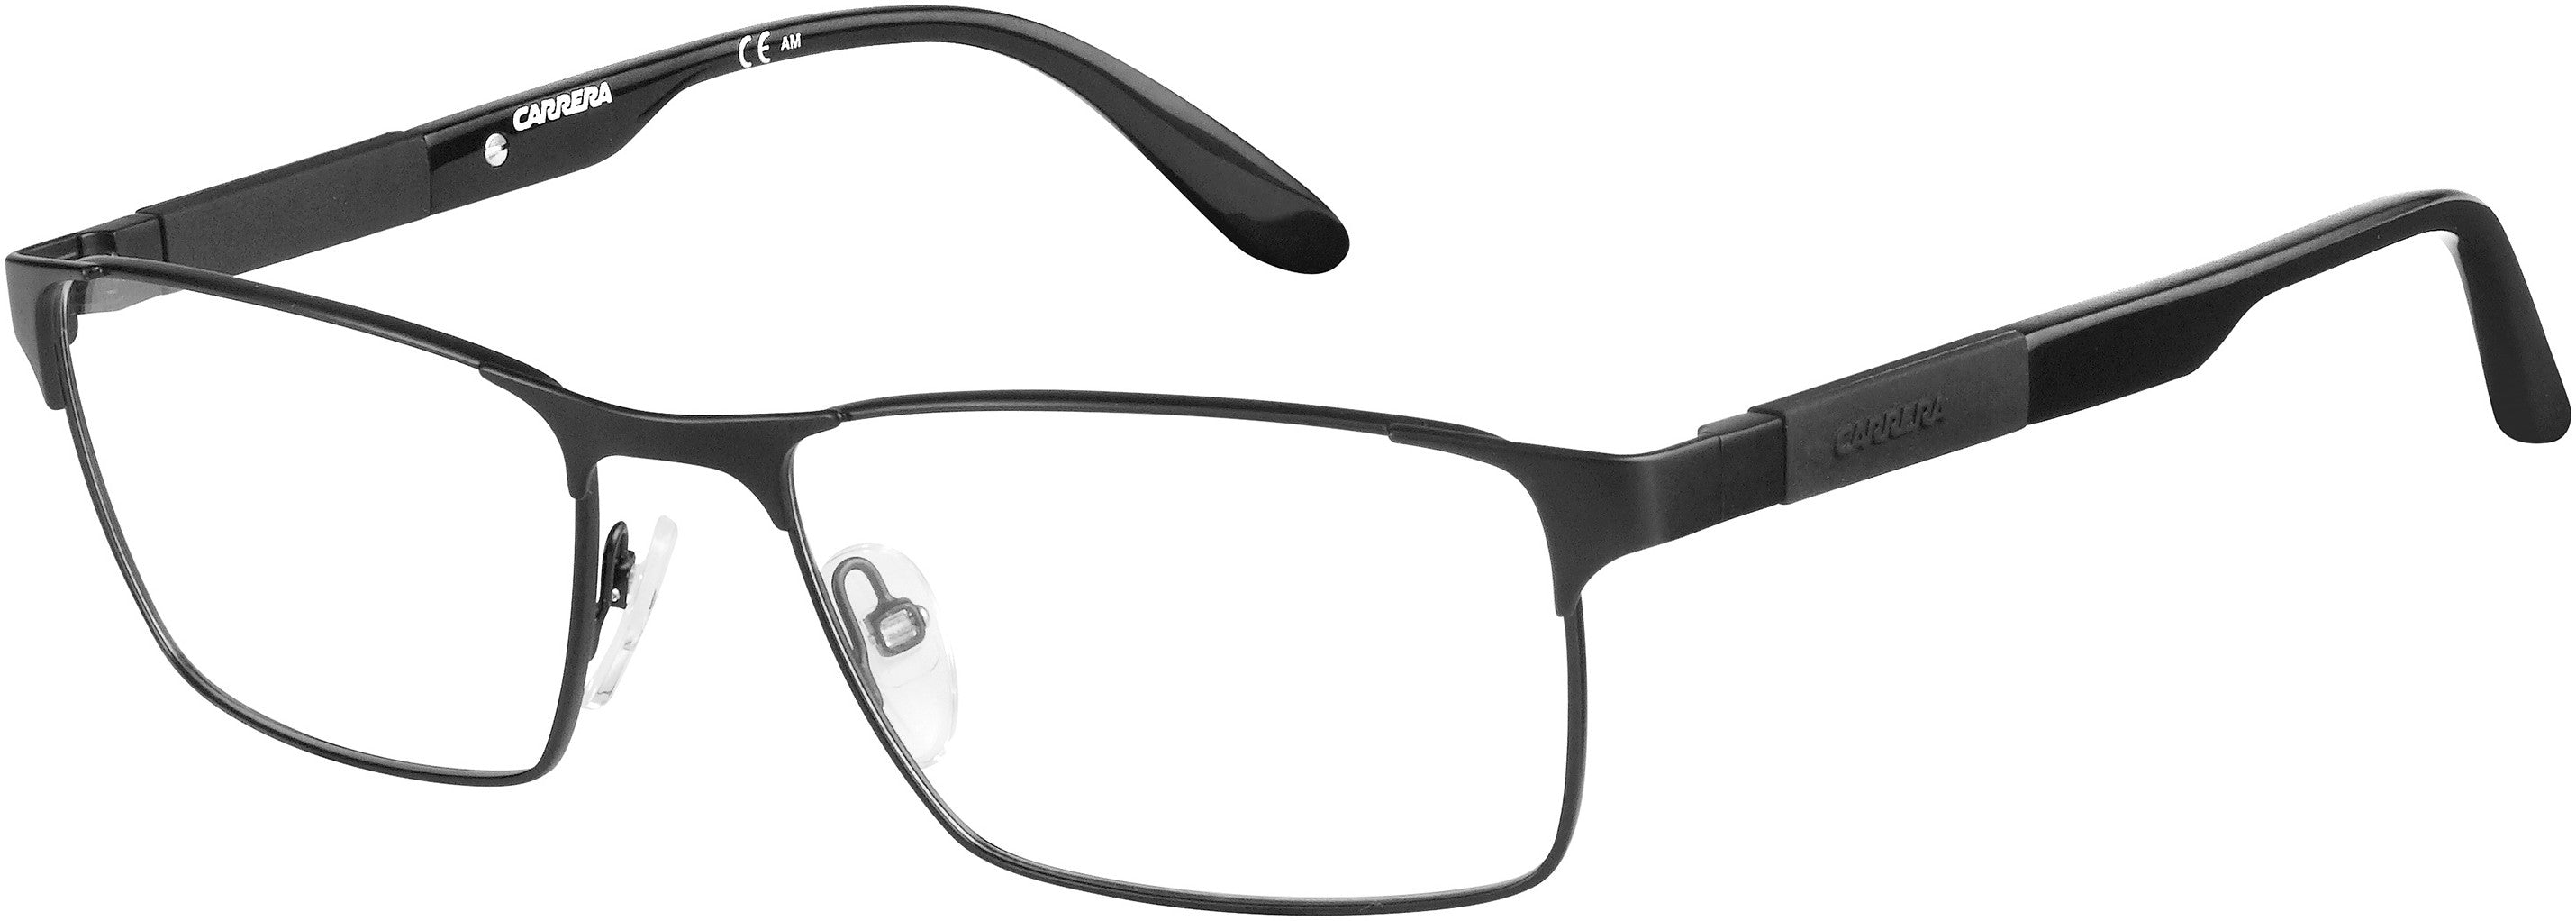  Carrera 8822 Rectangular Eyeglasses 010G-010G  Matte Black Black (00 Demo Lens)